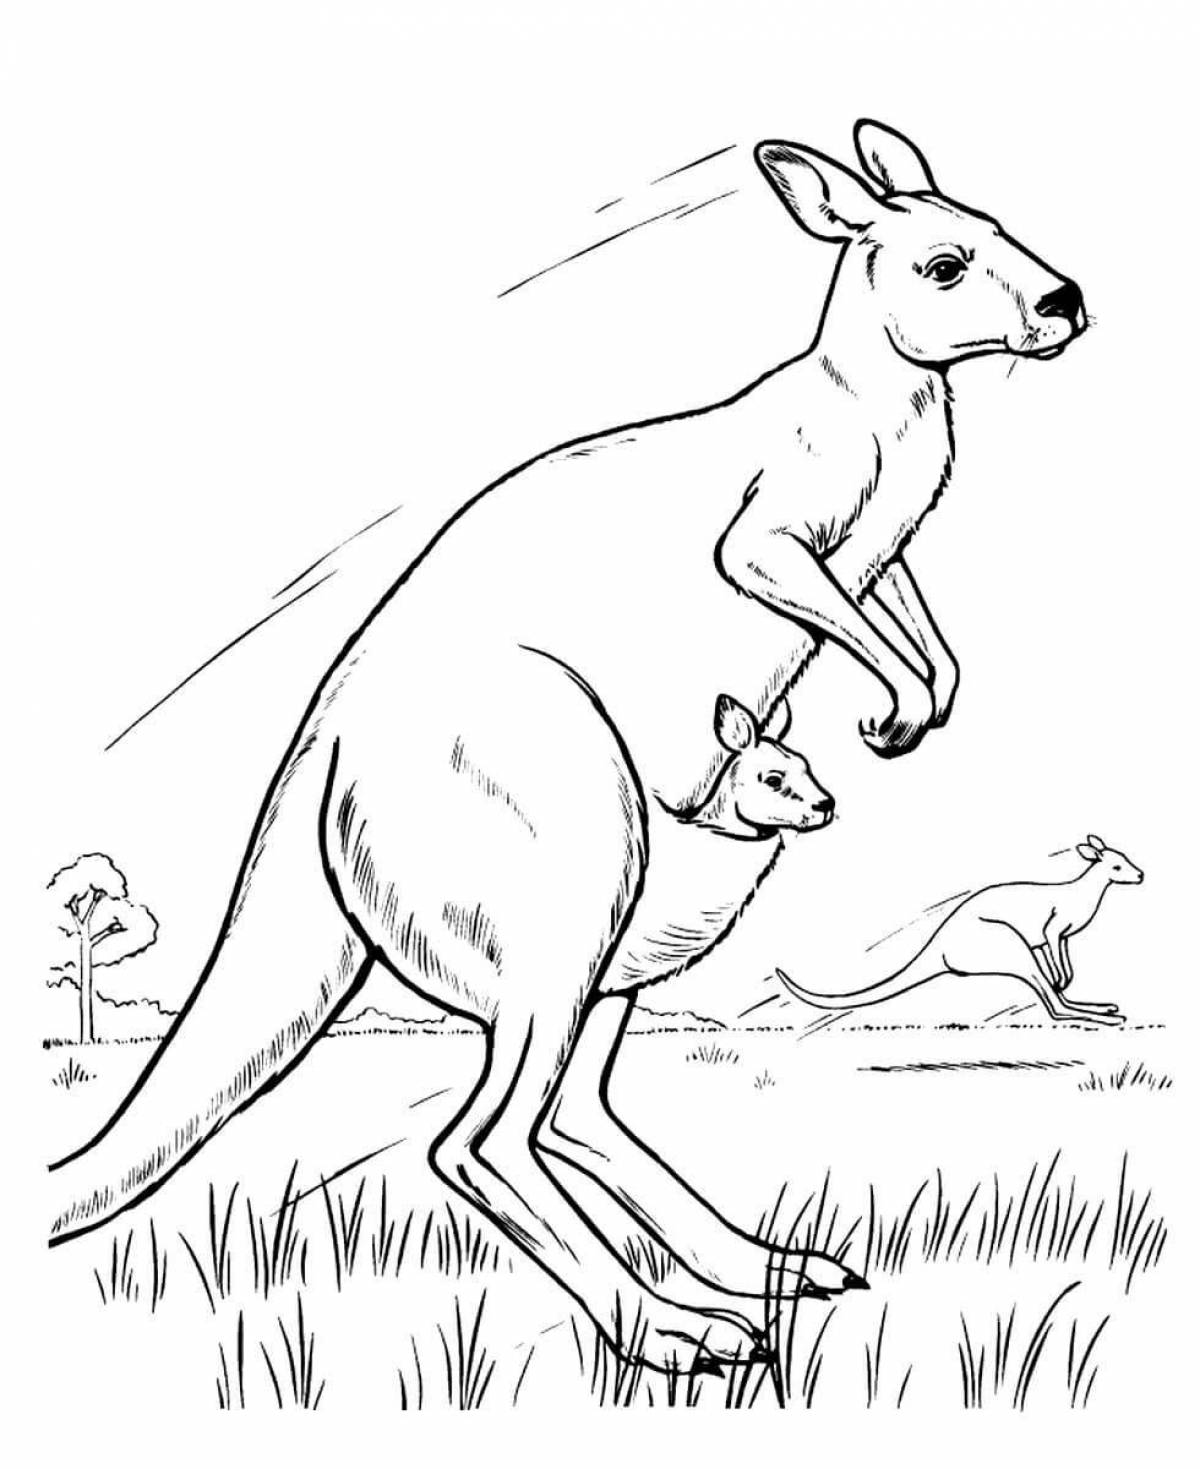 Coloring book glowing kangaroo for kids